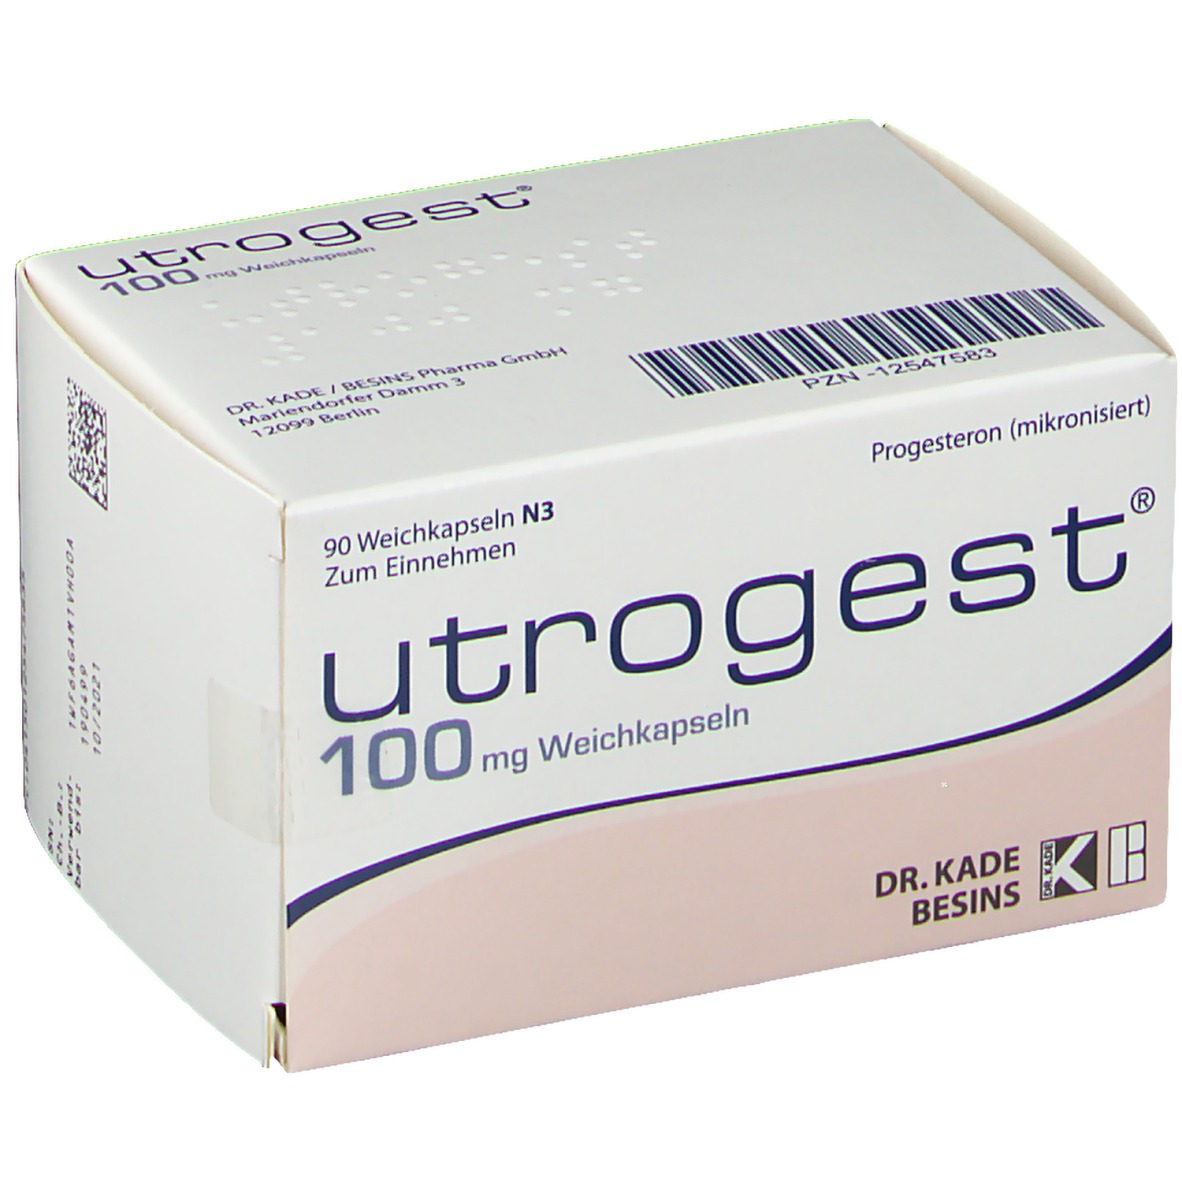 Utrogest - image 1